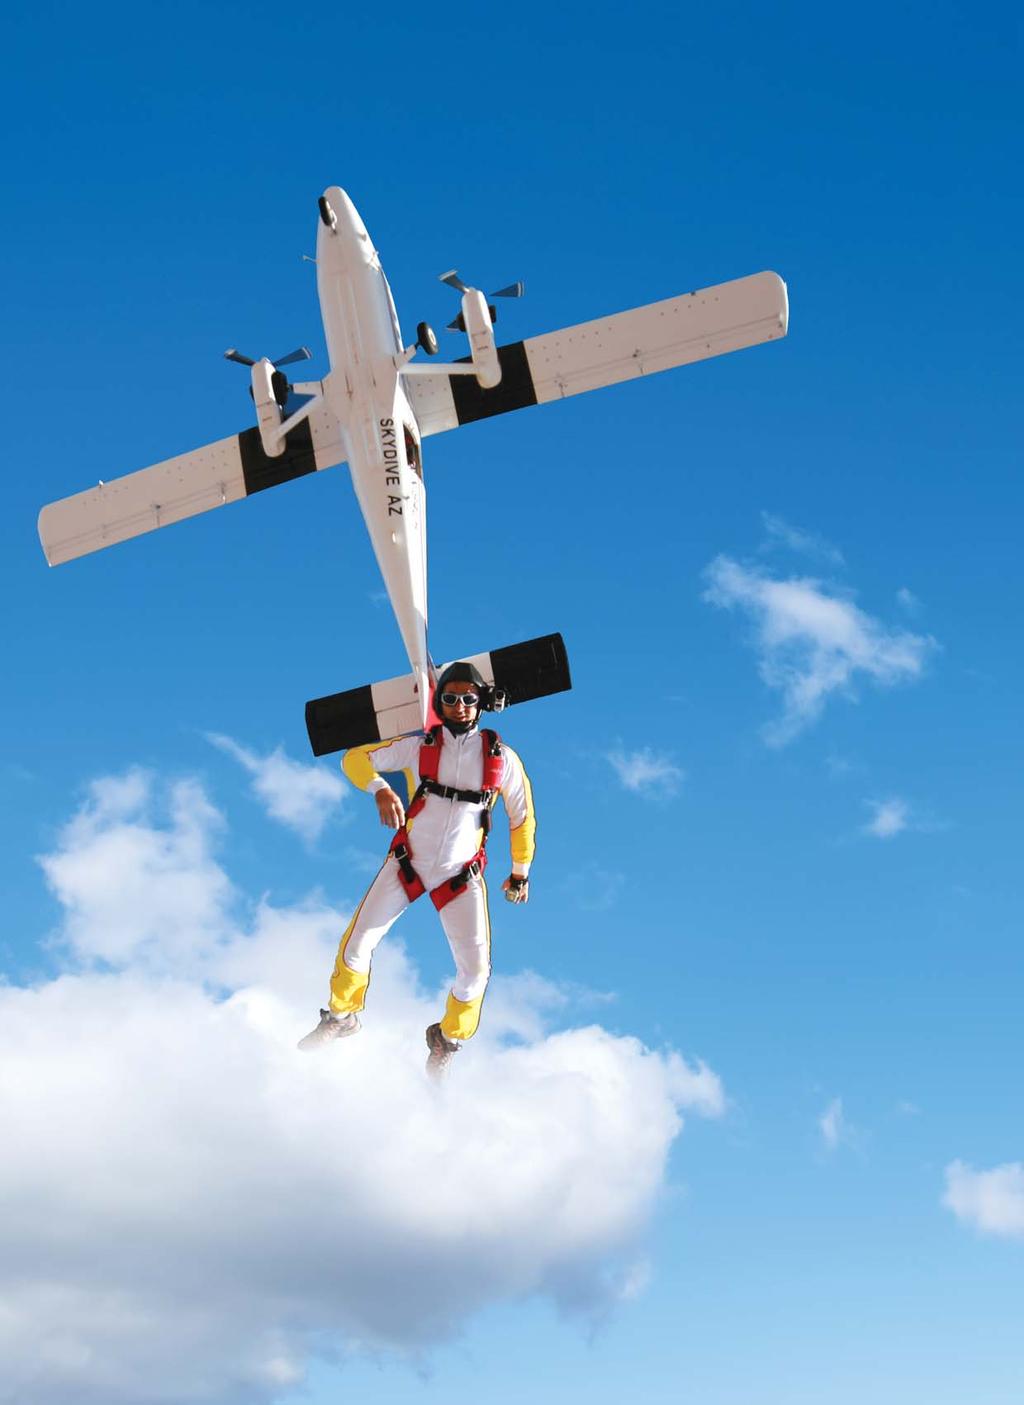 hobi 70 Serbest paraşüt sporu, Kaan Özenmiş 90 için Ulus taki paraşüt kulesine gitmesi ve oradan atlayış yapmasıyla başlar ve bu spor daha sonra kendisi için bir yaşam tarzı haline gelir.